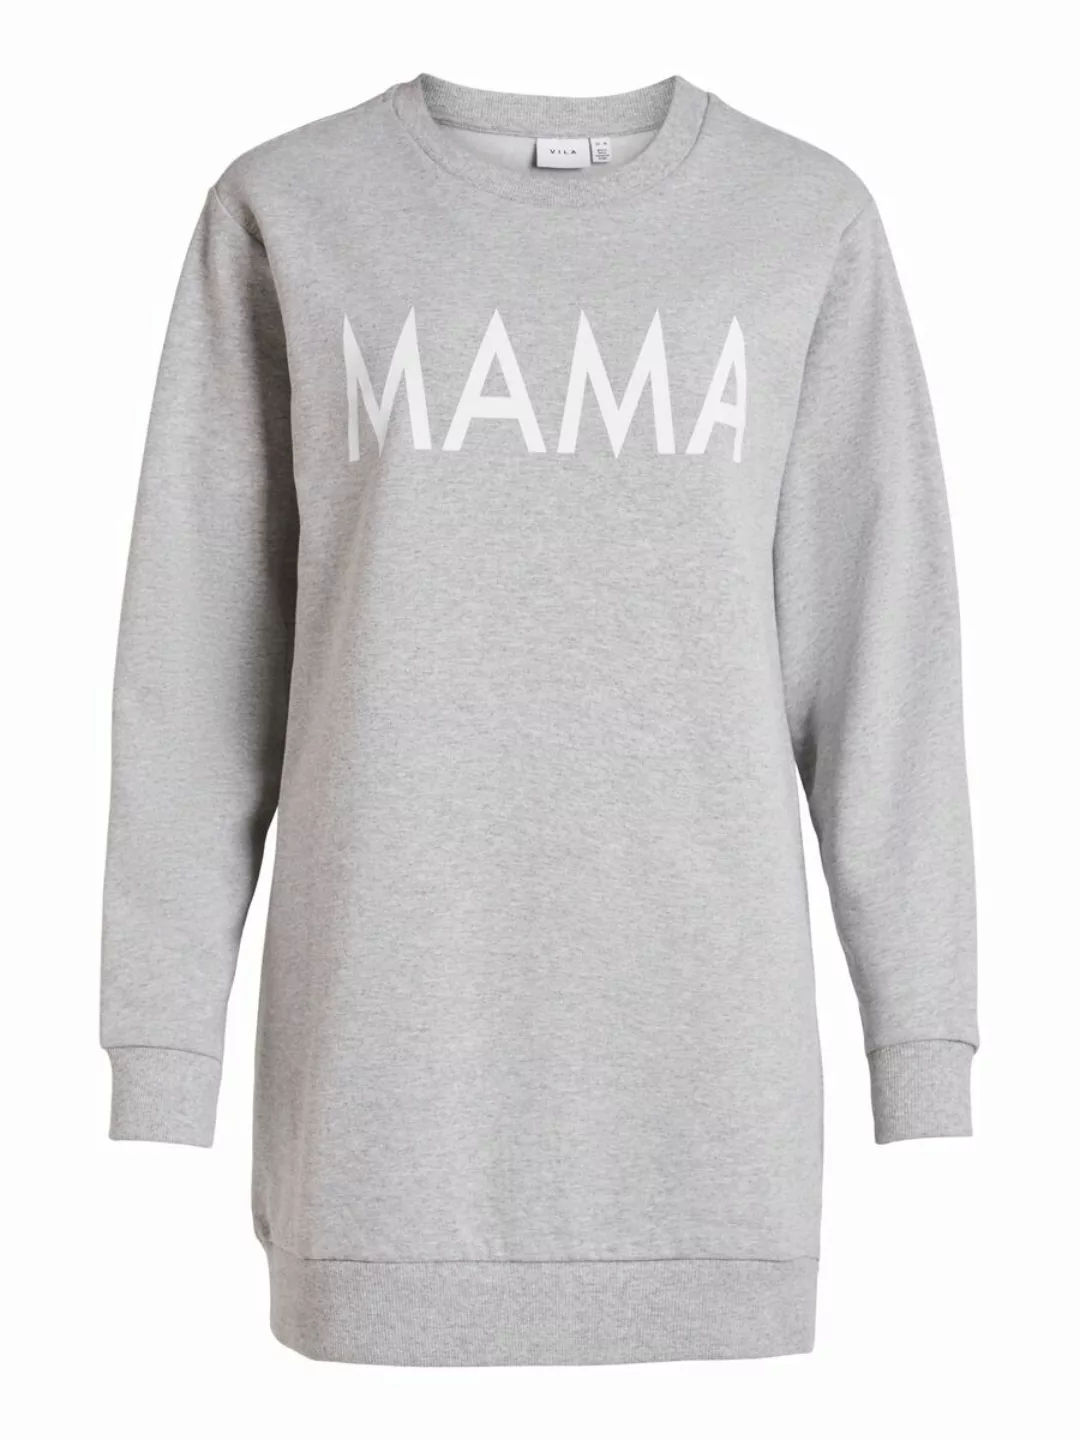 VILA Mama Sweatshirt Damen Grau günstig online kaufen